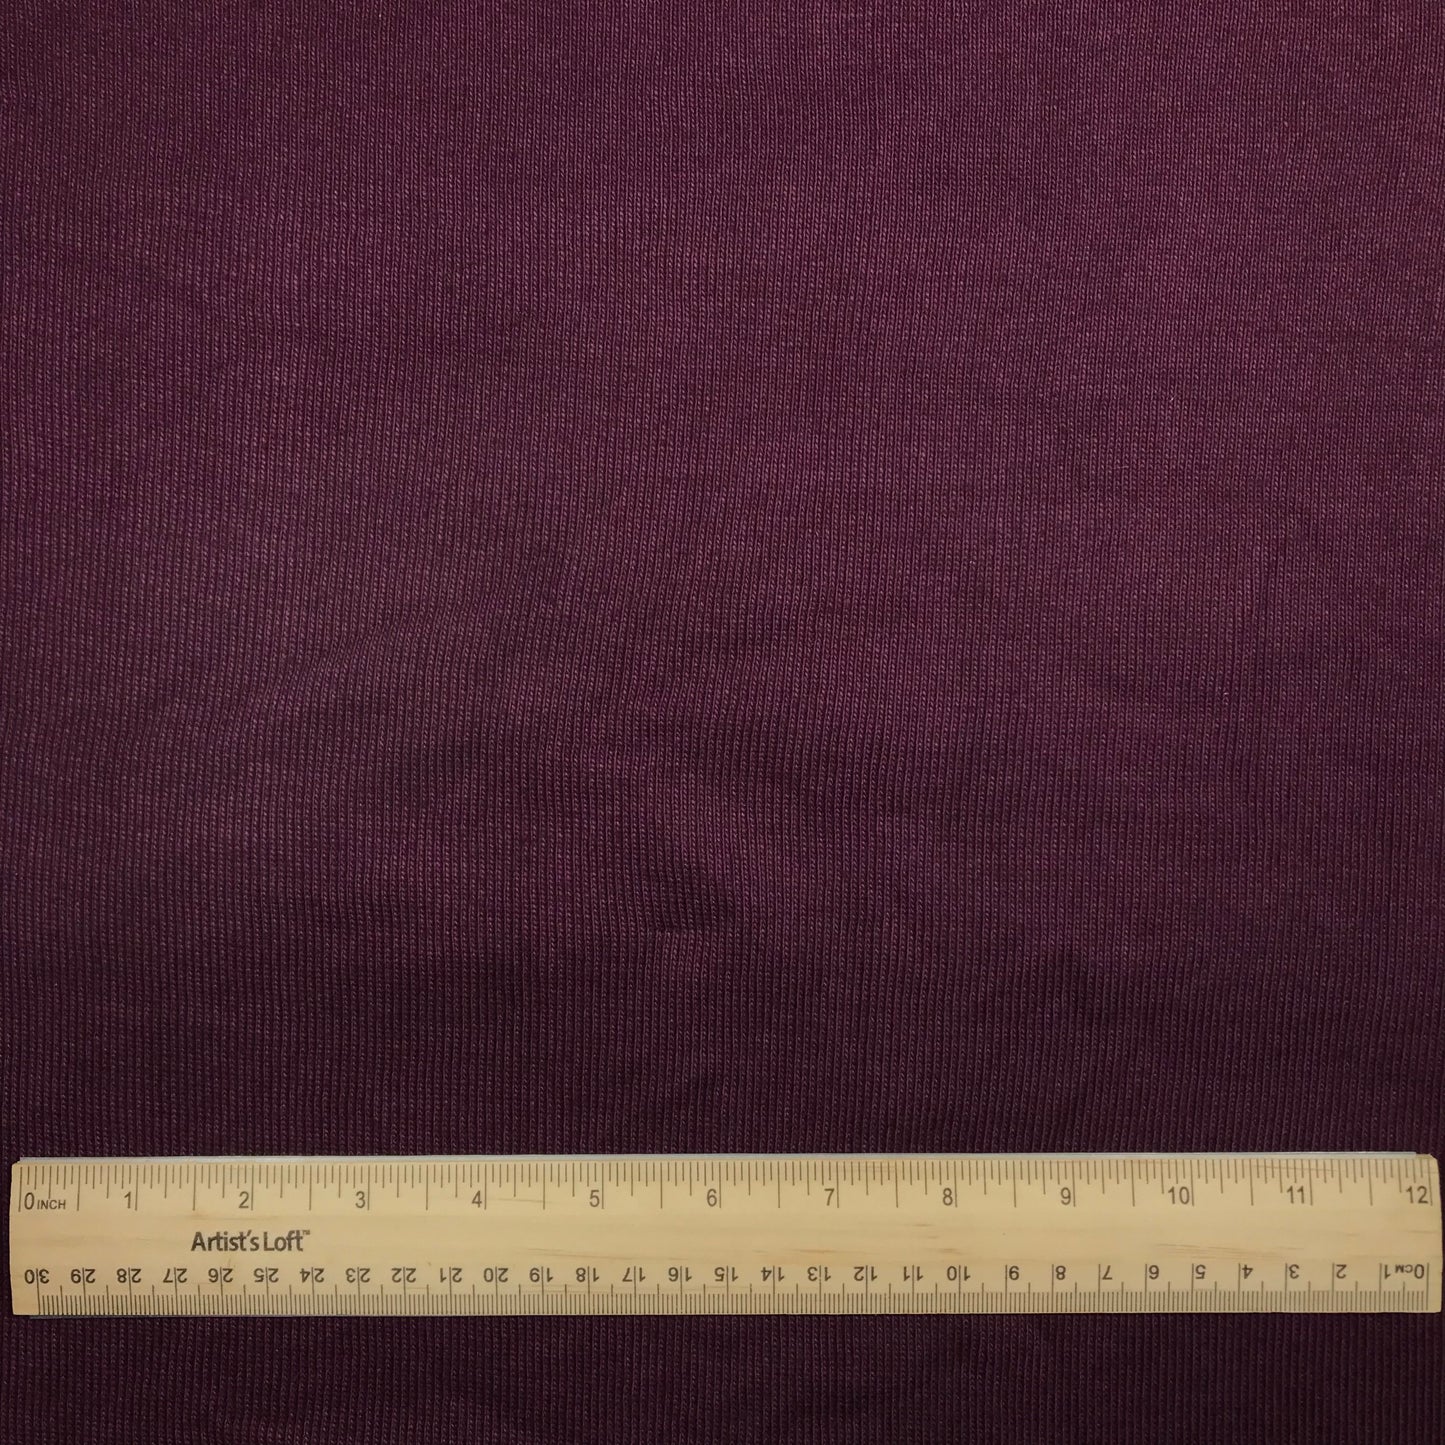 3/4 Yard Dark Purple Tubular 1x1 Rib Knit Remnant